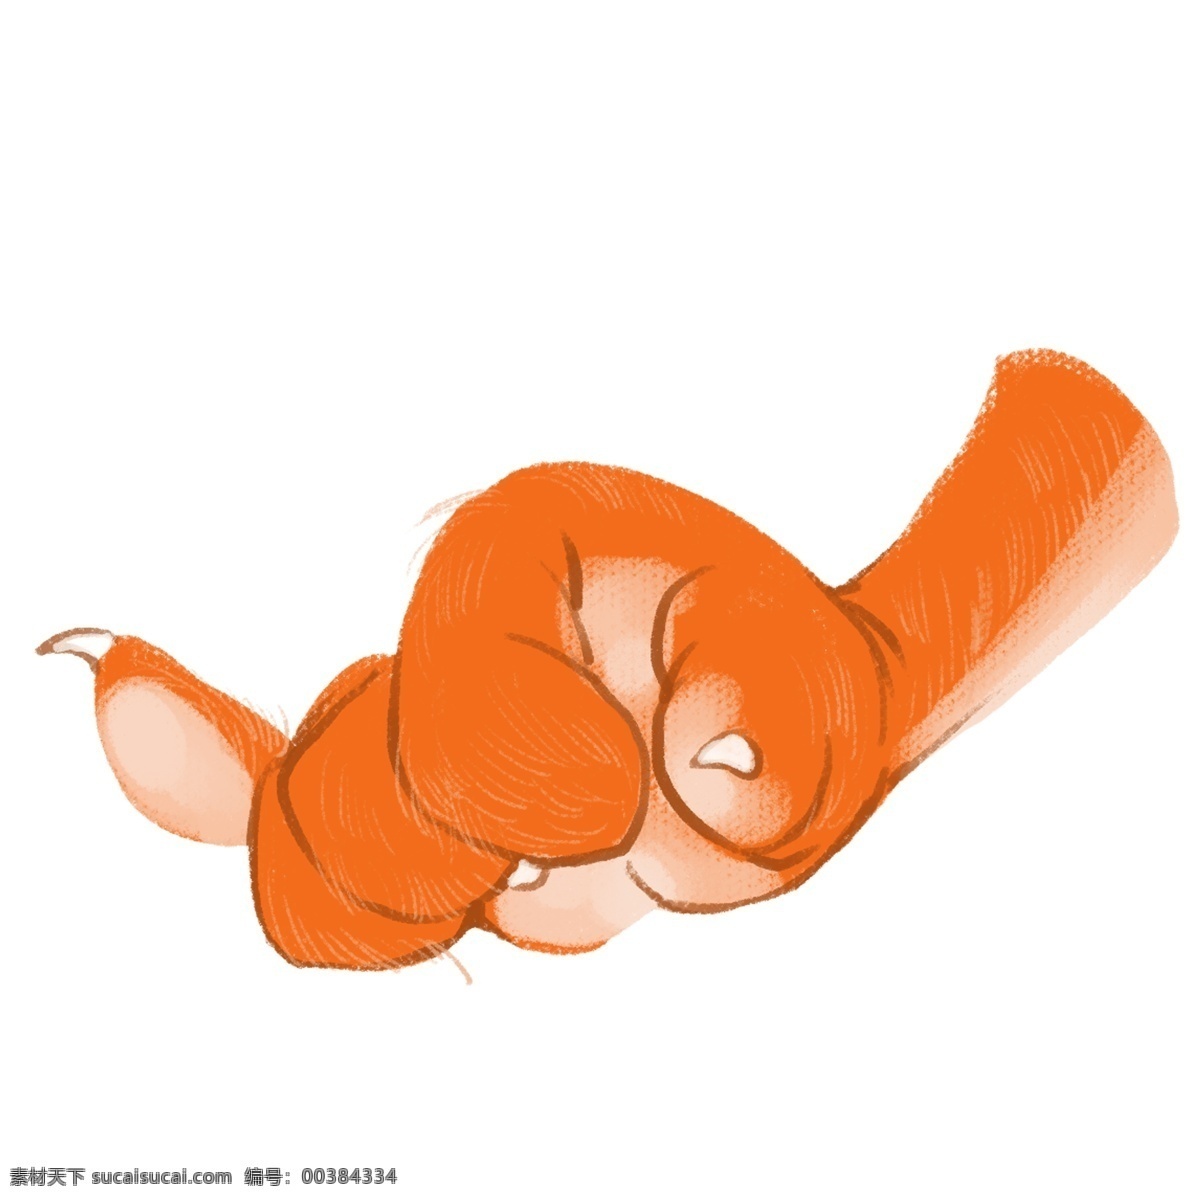 只 动物 手 爪 插画 黄色的手爪 锋利的爪子 创意手势插画 卡通动物手势 白色的手心 锋利的指甲